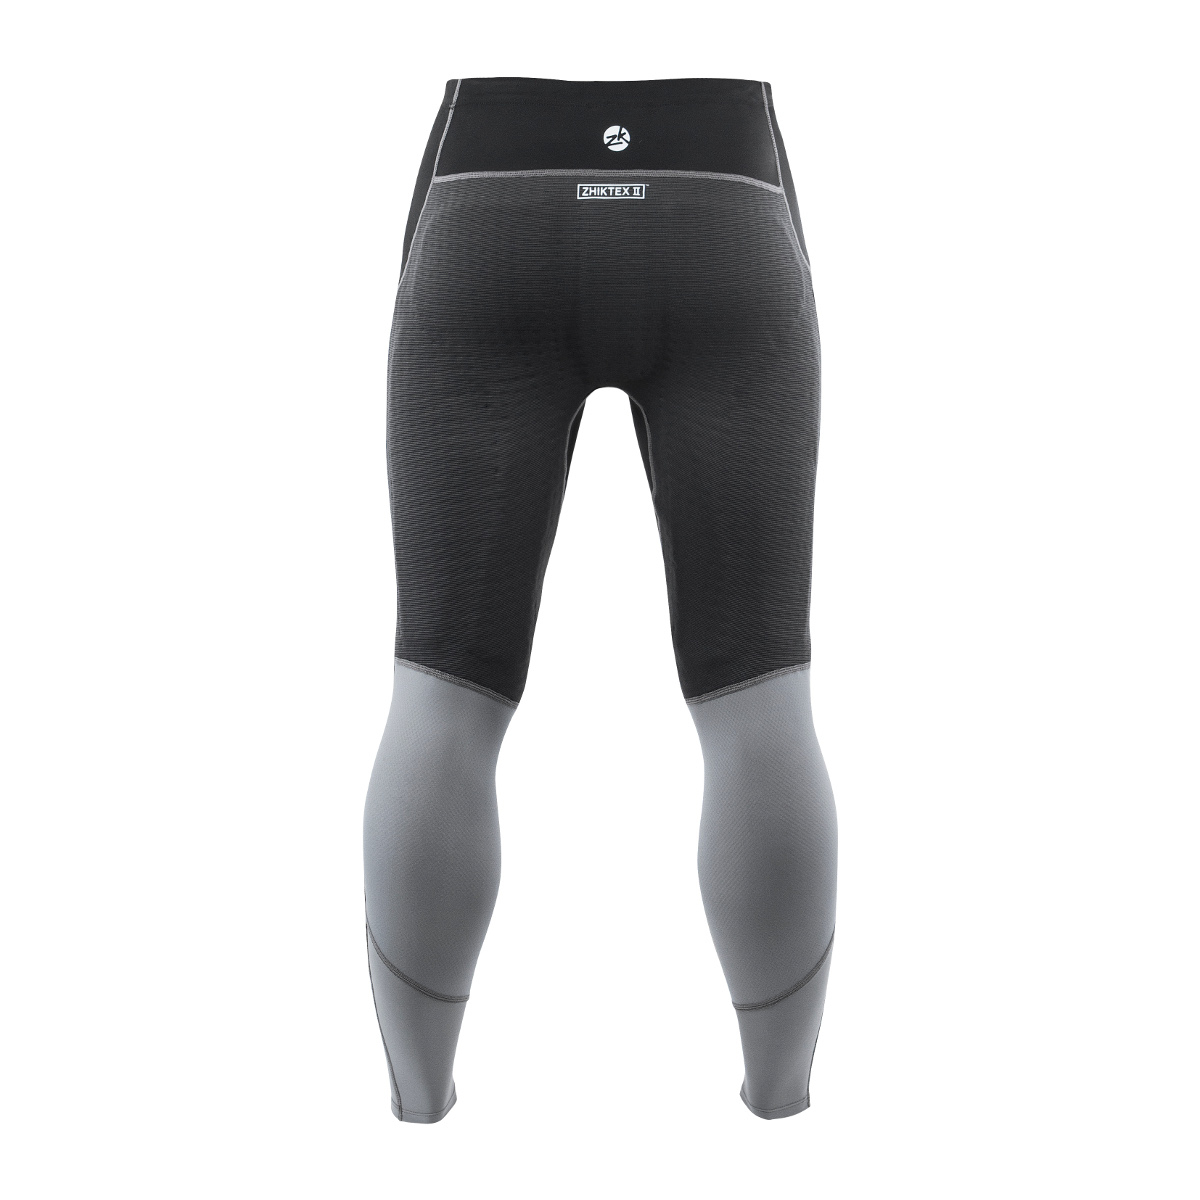 Zhik Deckbeater pantalon d'équitation unisexe noir-gris, taille XXL